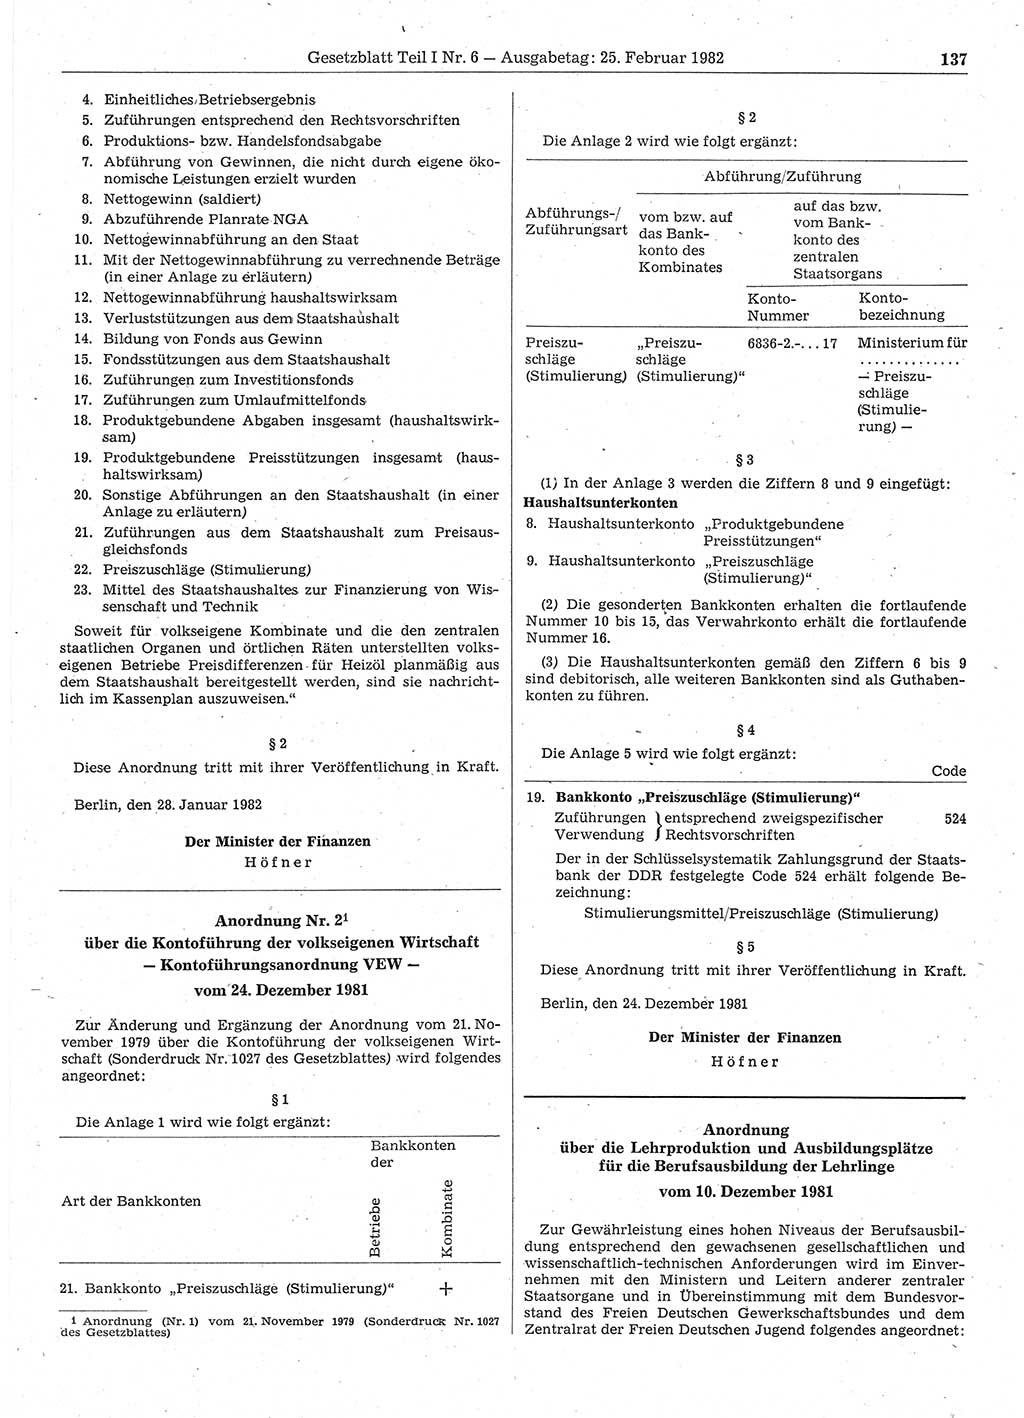 Gesetzblatt (GBl.) der Deutschen Demokratischen Republik (DDR) Teil Ⅰ 1982, Seite 137 (GBl. DDR Ⅰ 1982, S. 137)